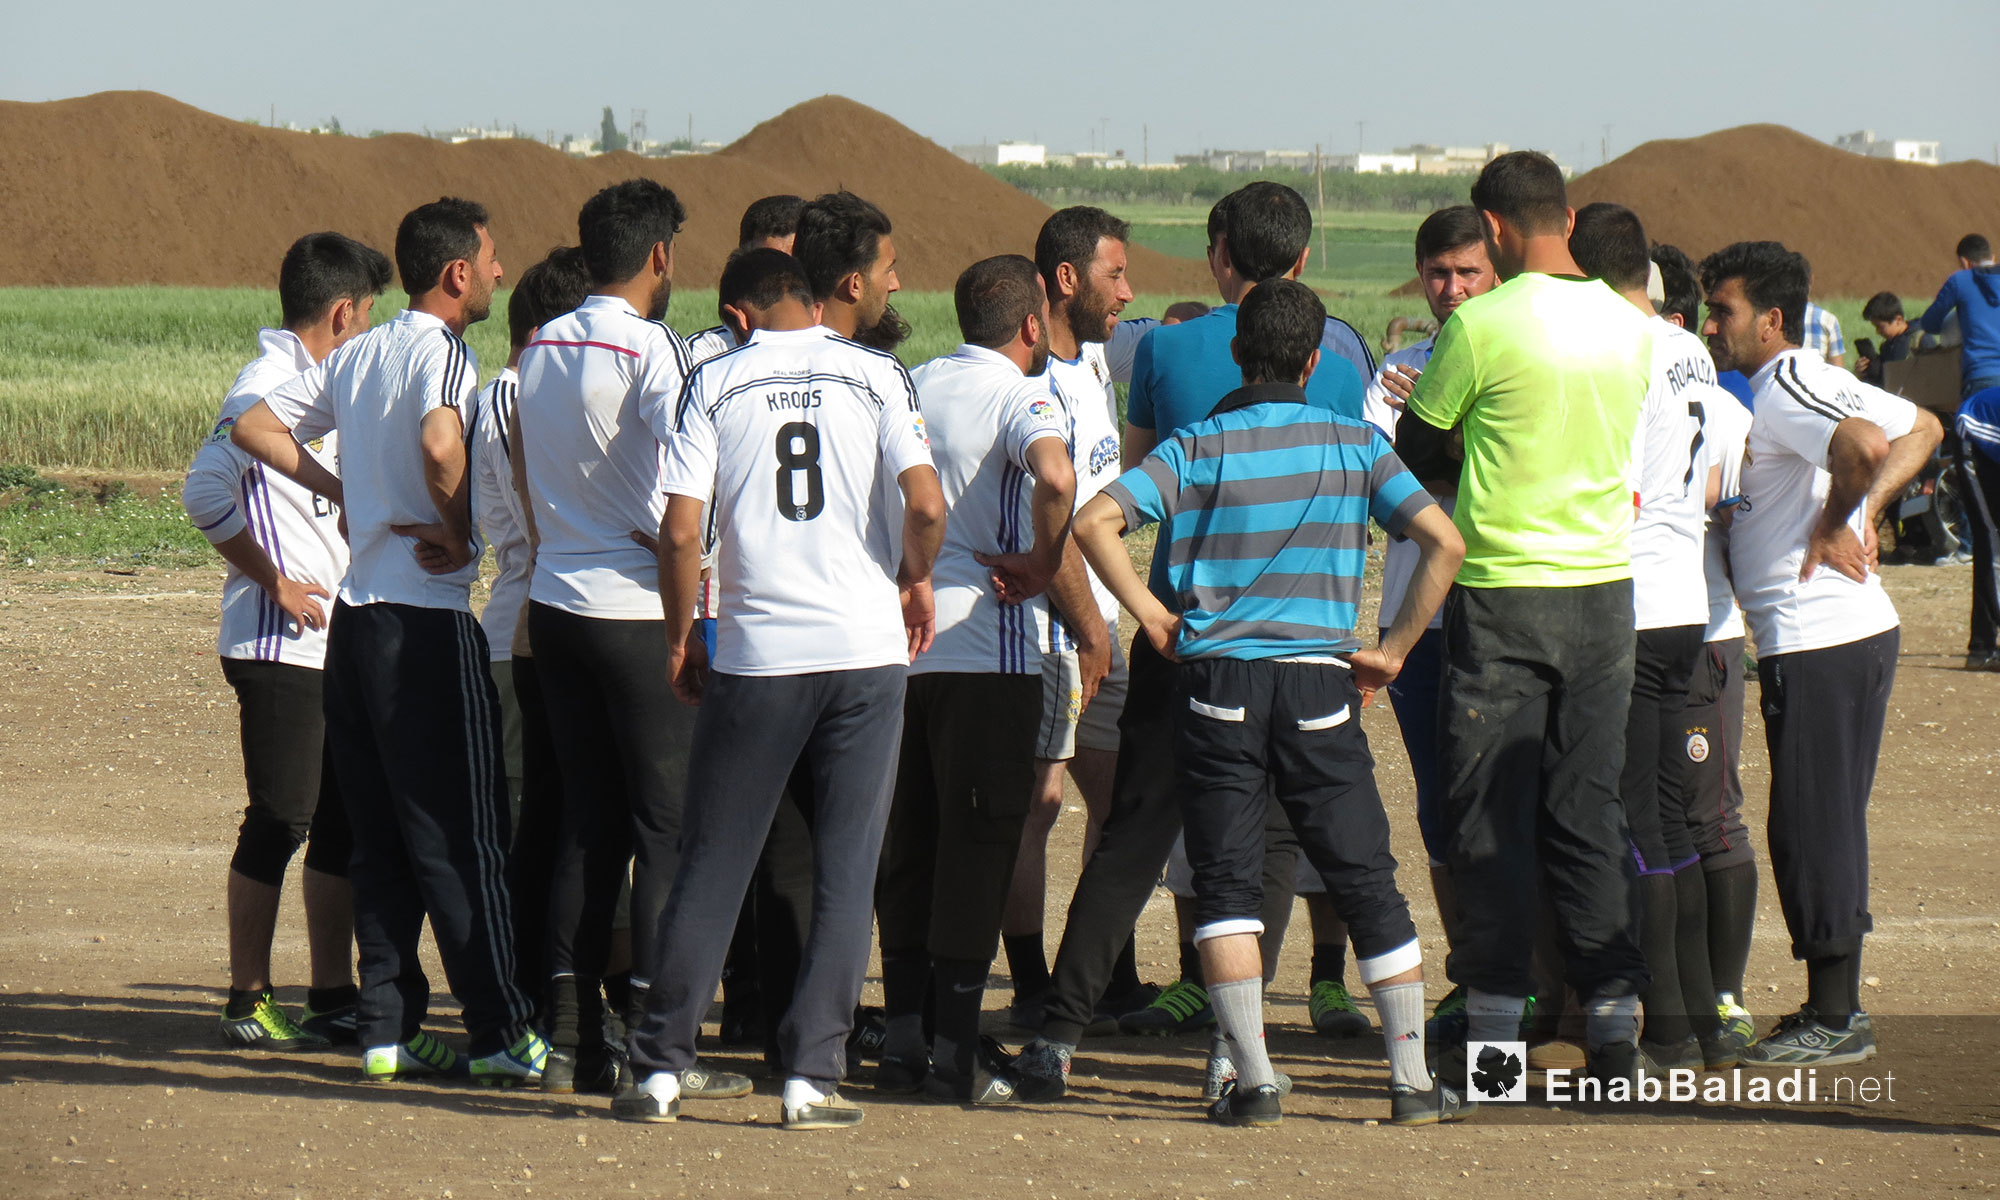 دوري كرة القدم في ملعب دابق بين فريقي دابق ومارع - 8 أيار 2017 (عنب بلدي)